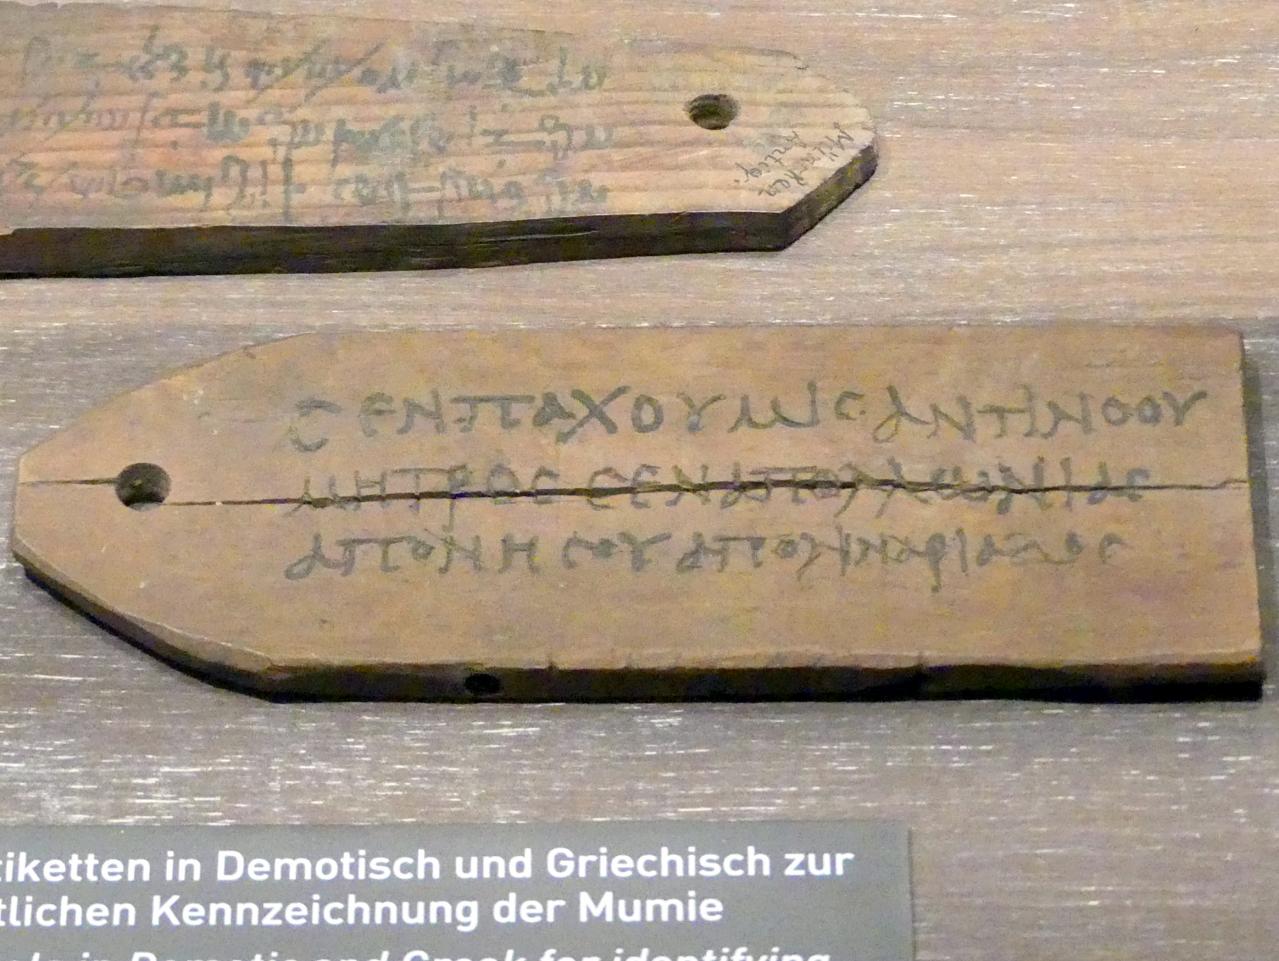 Etikette in Griechisch zur namentlichen Kennzeichnung einer Mumie, Koptische Zeit, 200 - 800, 400 - 600, Bild 1/2